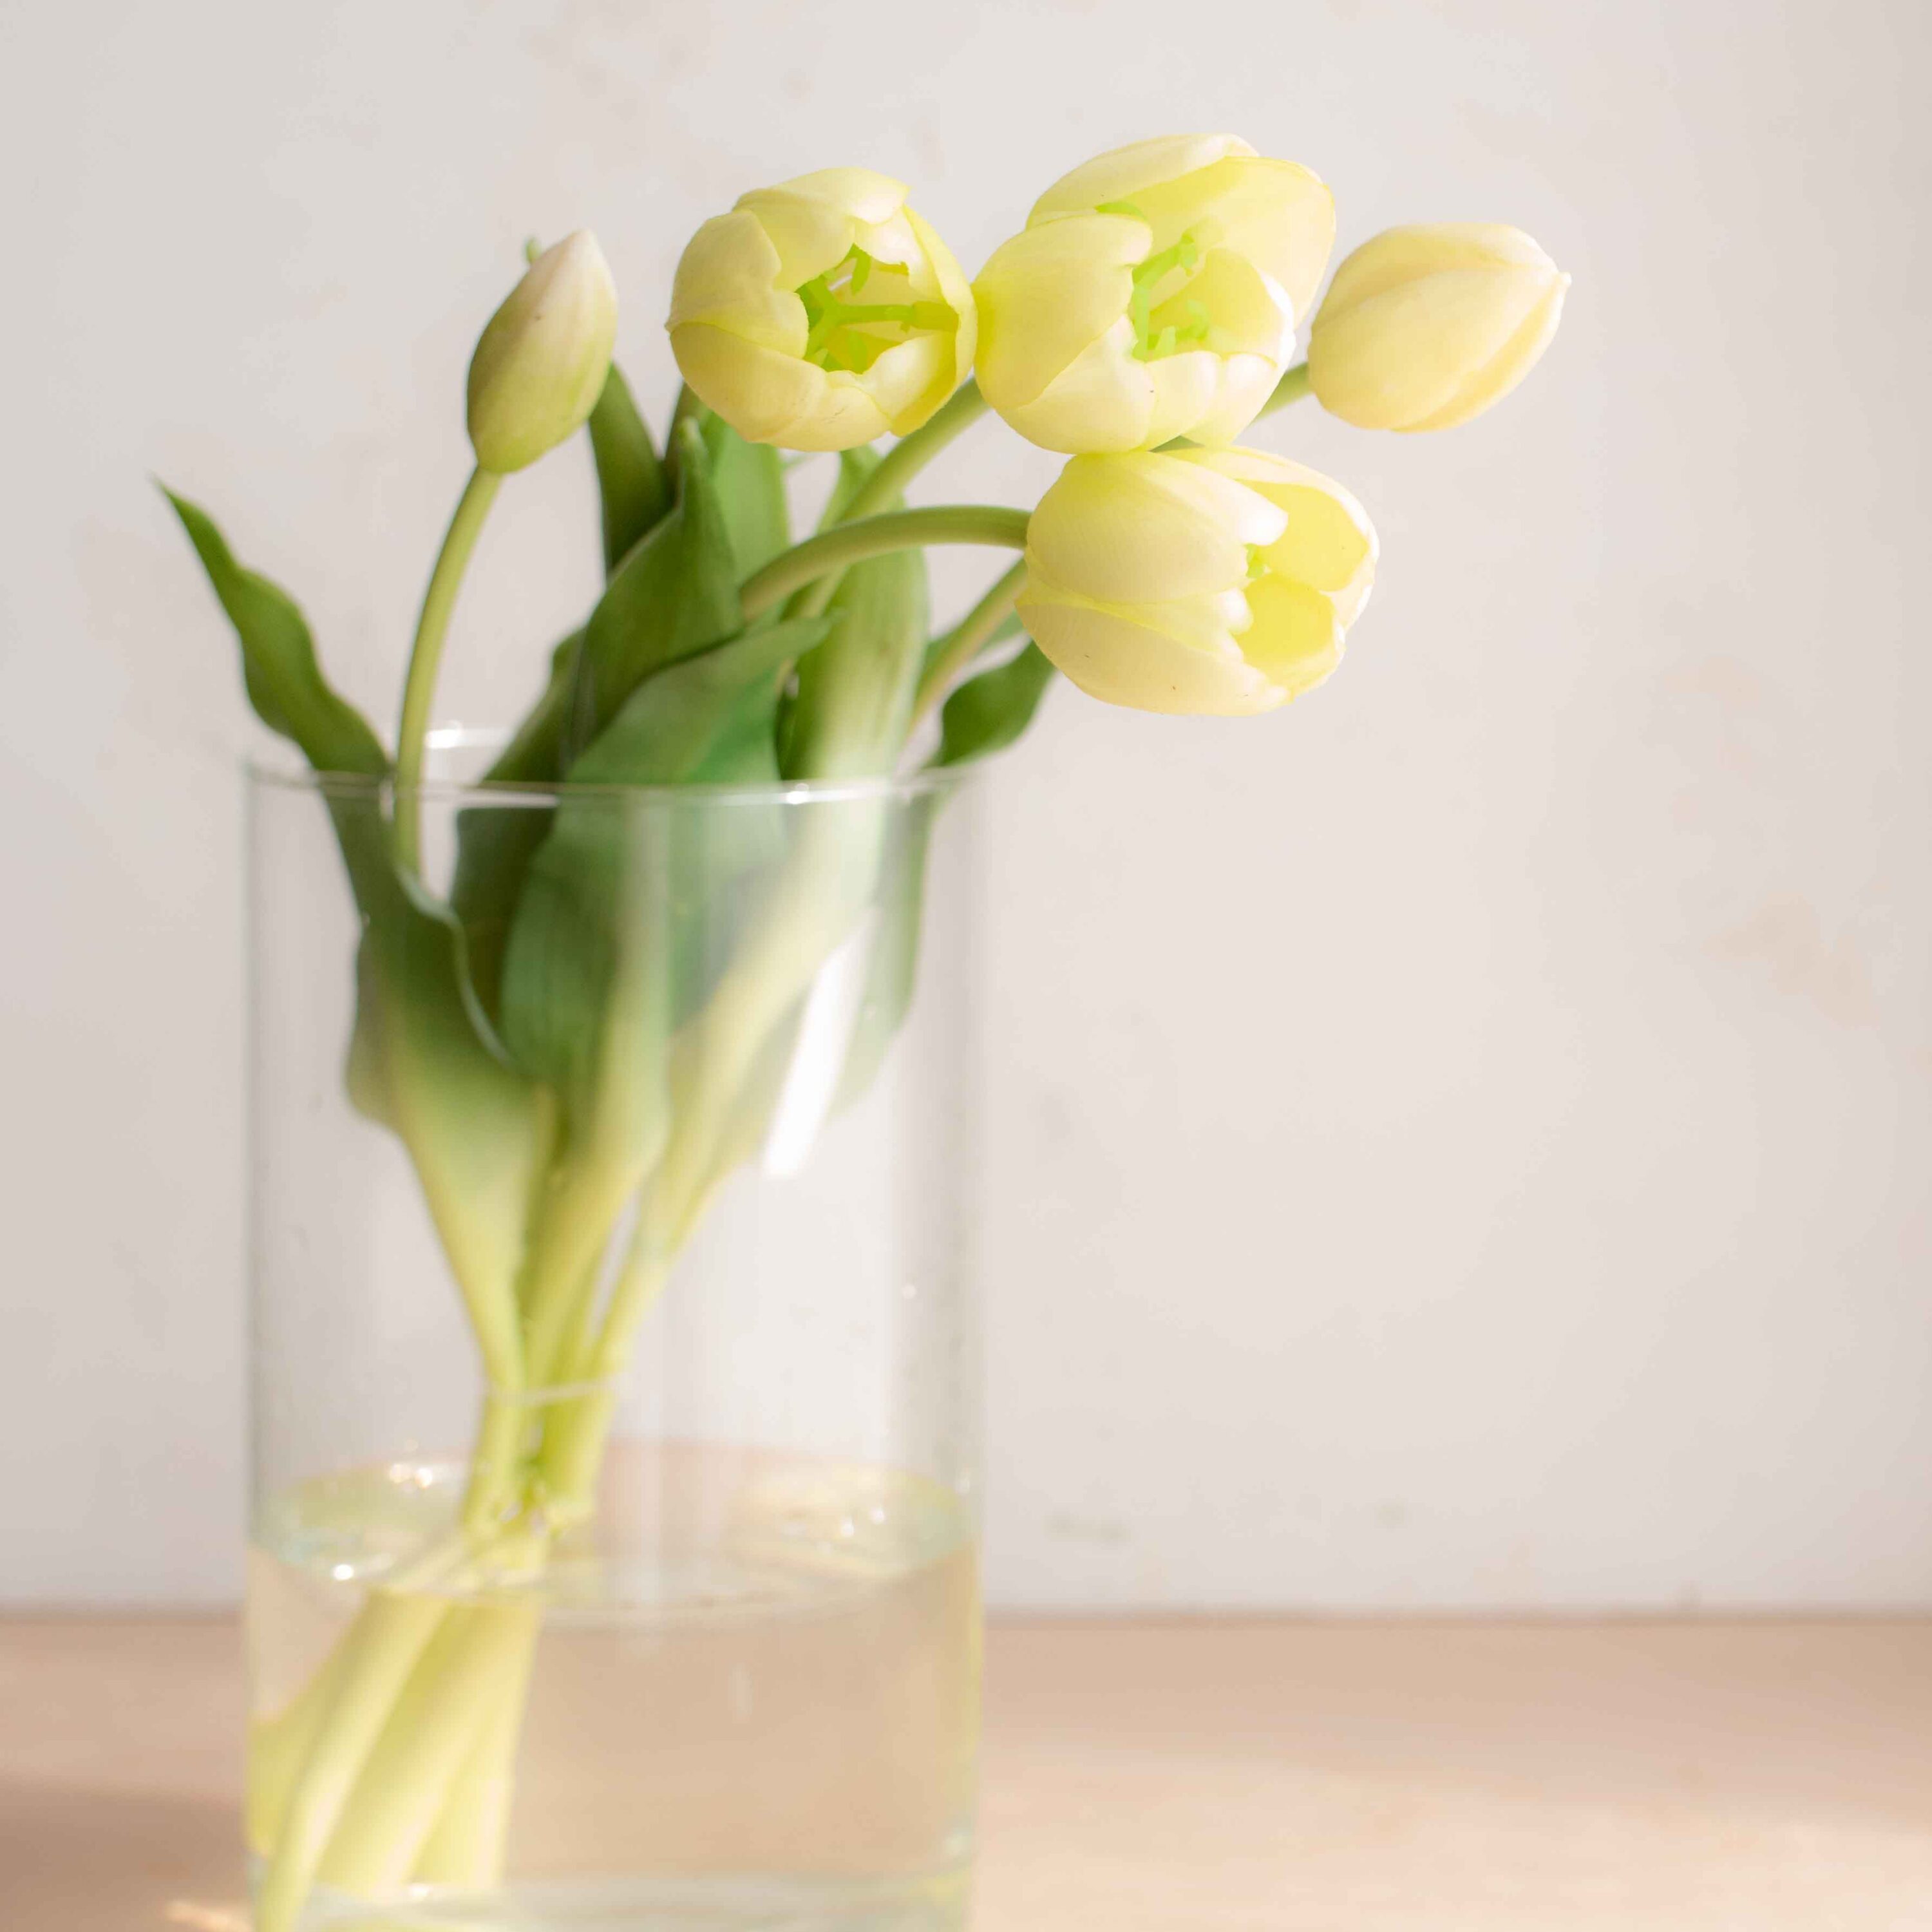 bellissimi tulipani real touch, estremamente realistici colore bianco caldo